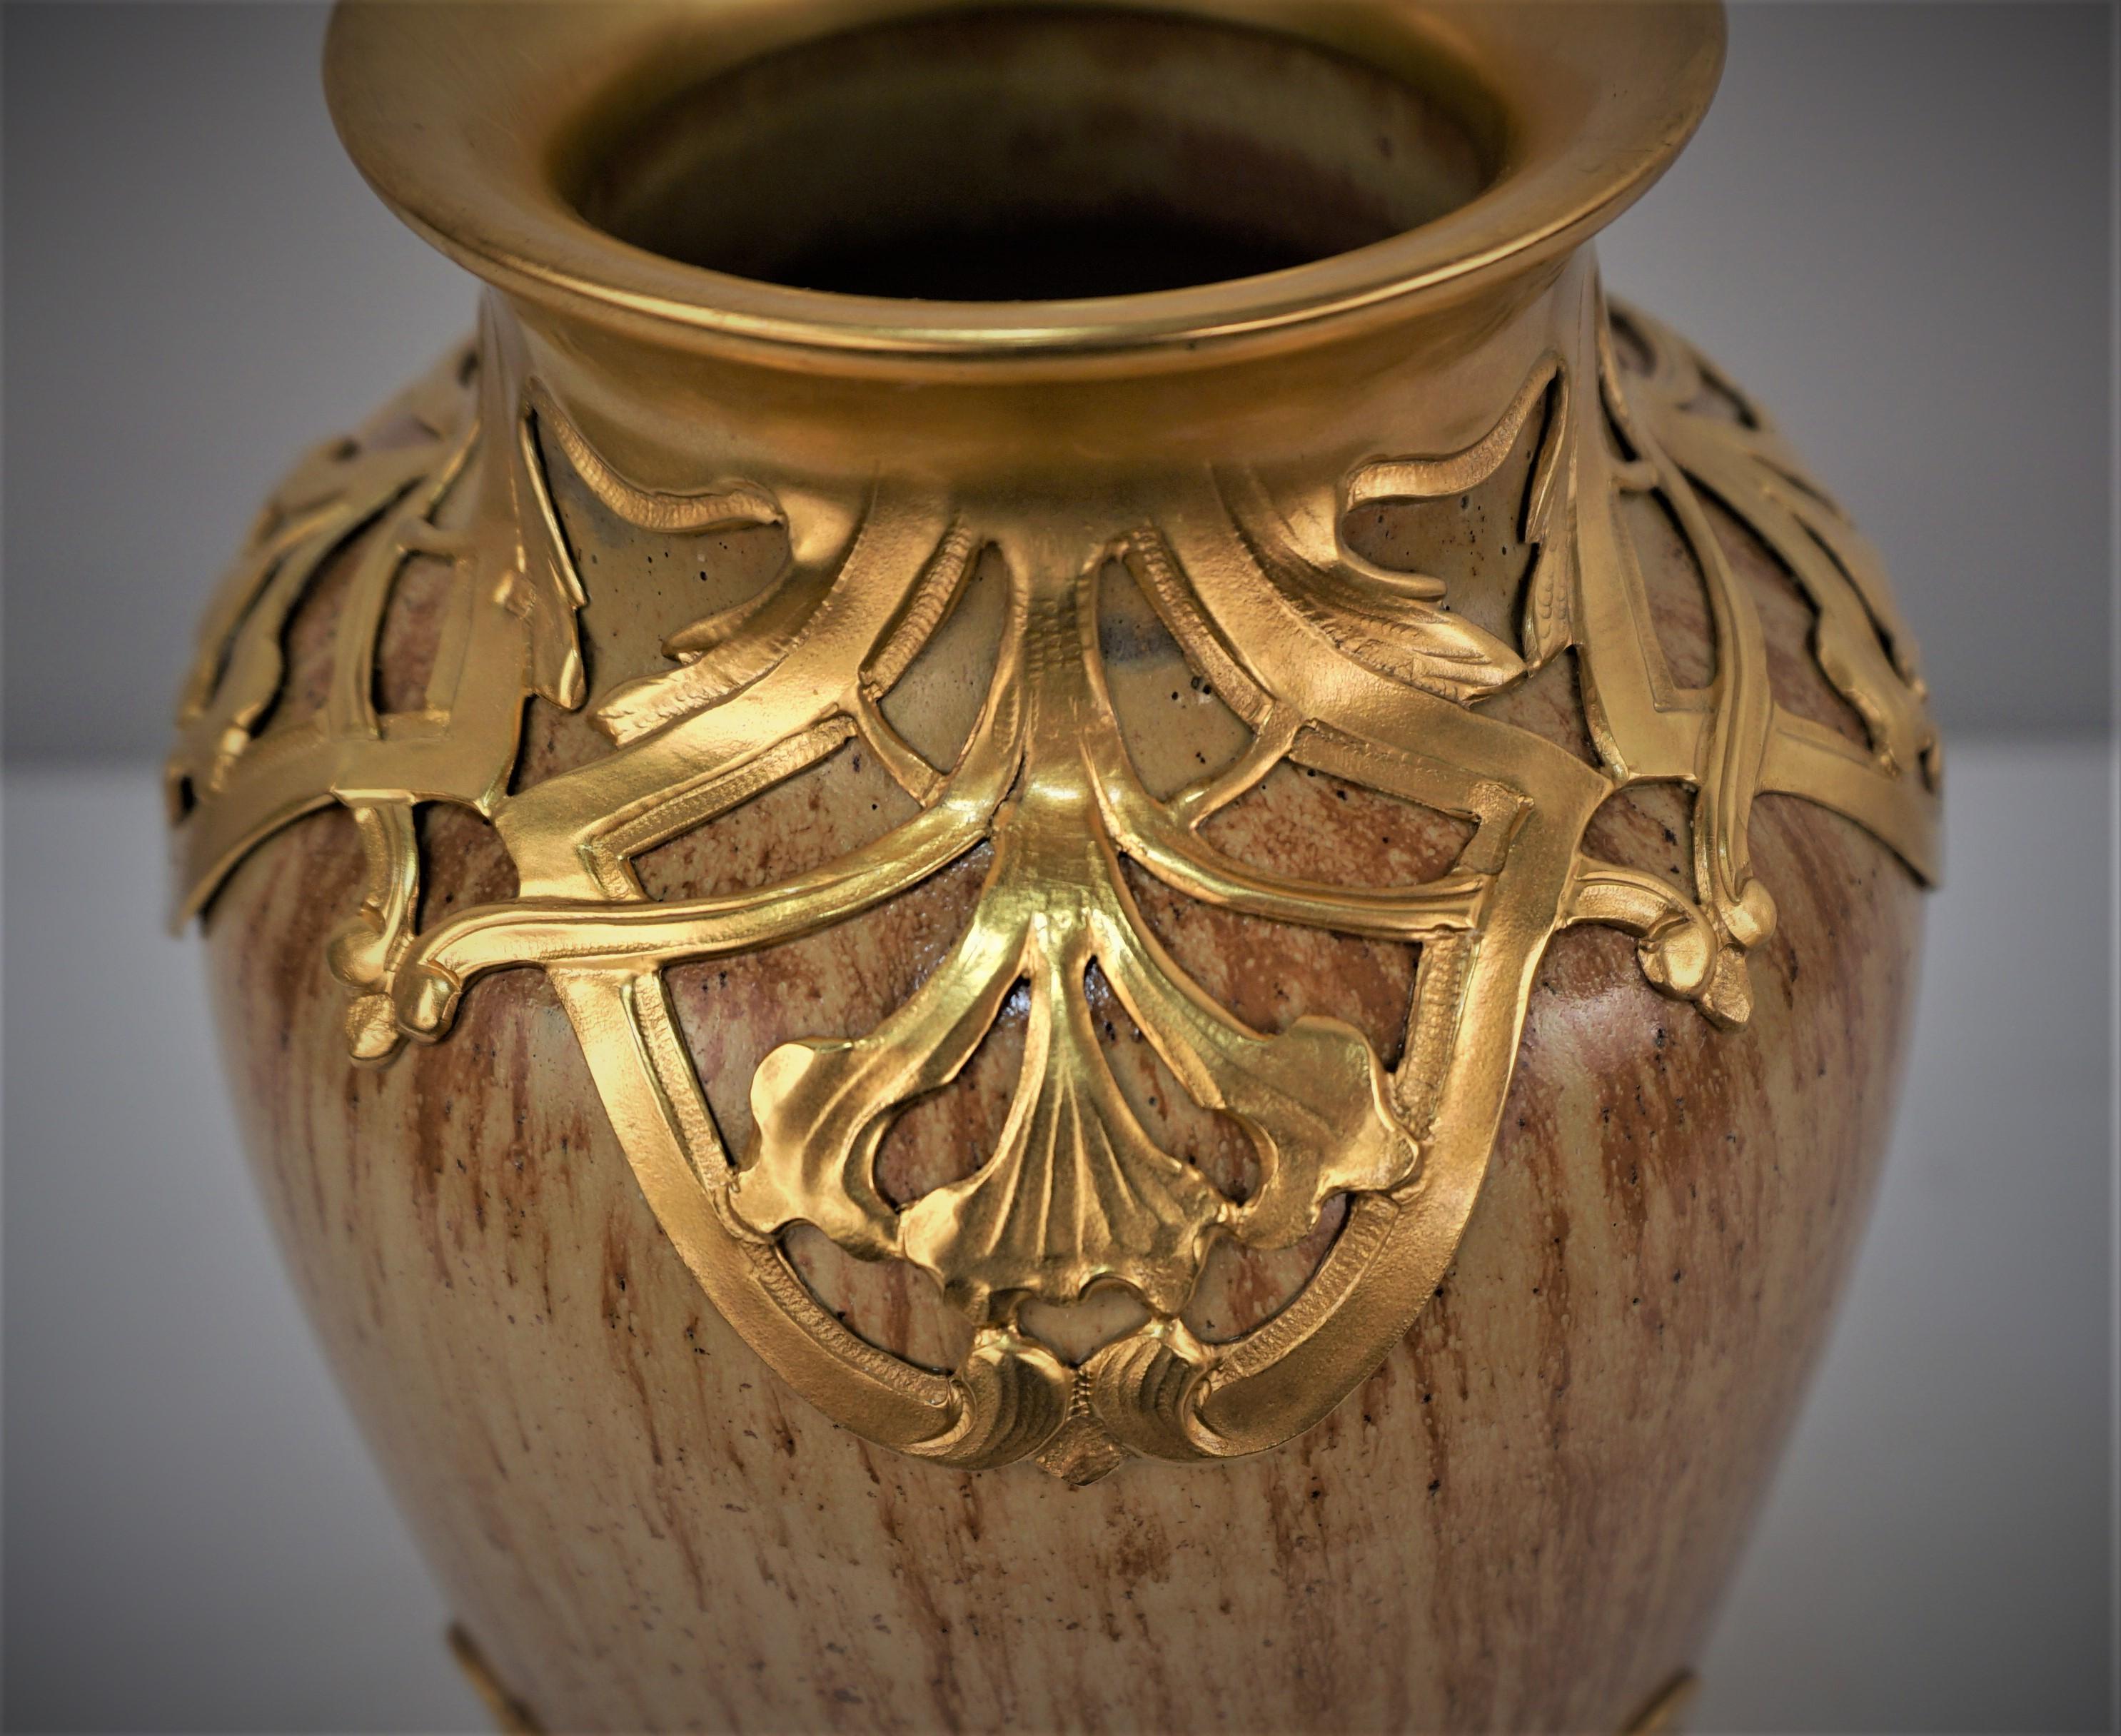 Un très beau et impressionnant vase français de la fin du 19e siècle en poterie art nouveau, recouvert d'un décor d'or sur argent.
L'or sur argent porte la marque E F et l'image d'une ancre au centre.